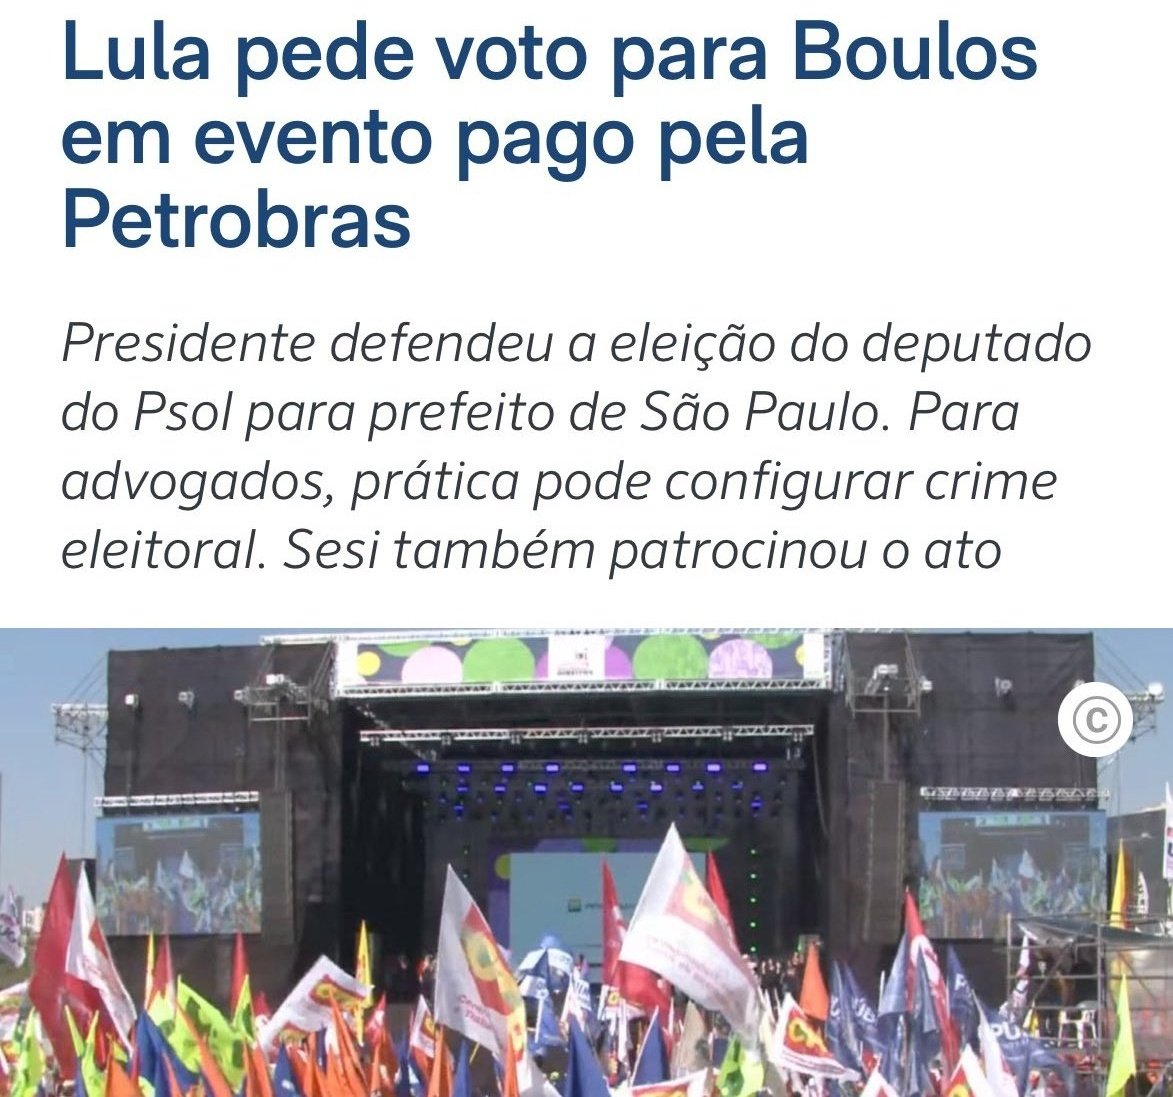 A lista de crimes eleitorais praticados hoje, se o TSE, usar a mesma régua usada com Bolsonaro, Boulos fica inelegível até 2032. Agora, se vão usar outra régua, tem de anular a inelegibilidade do Bolsonaro. Ou uma ou outra.